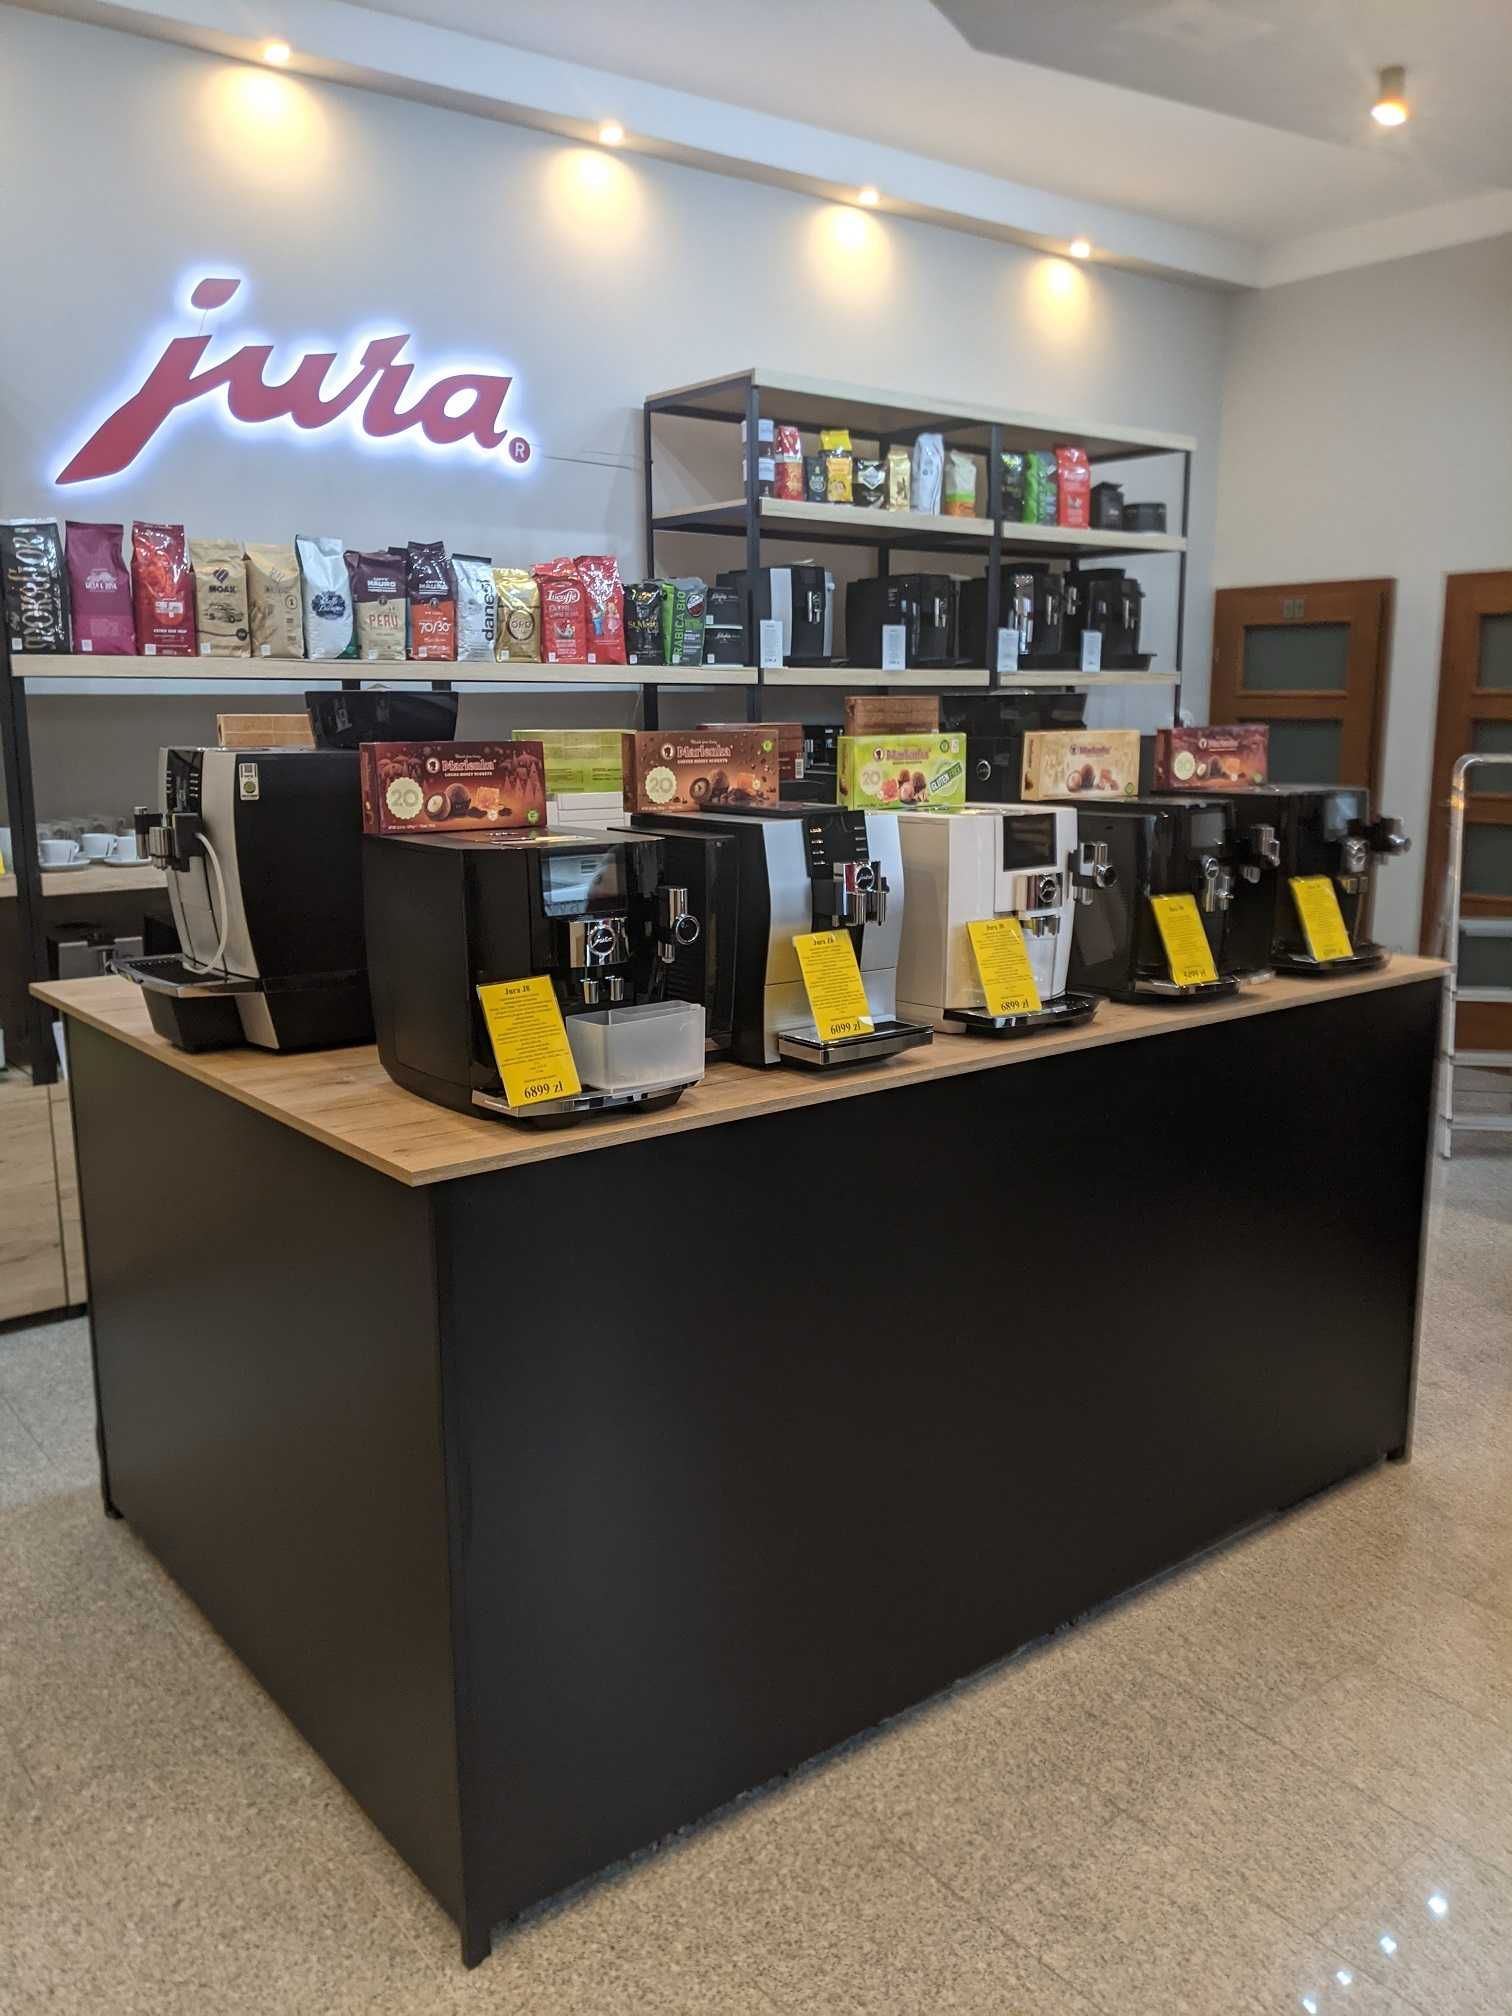 Sprzedaż ekspresów marki Jura oraz akcesoria, kawy i serwis